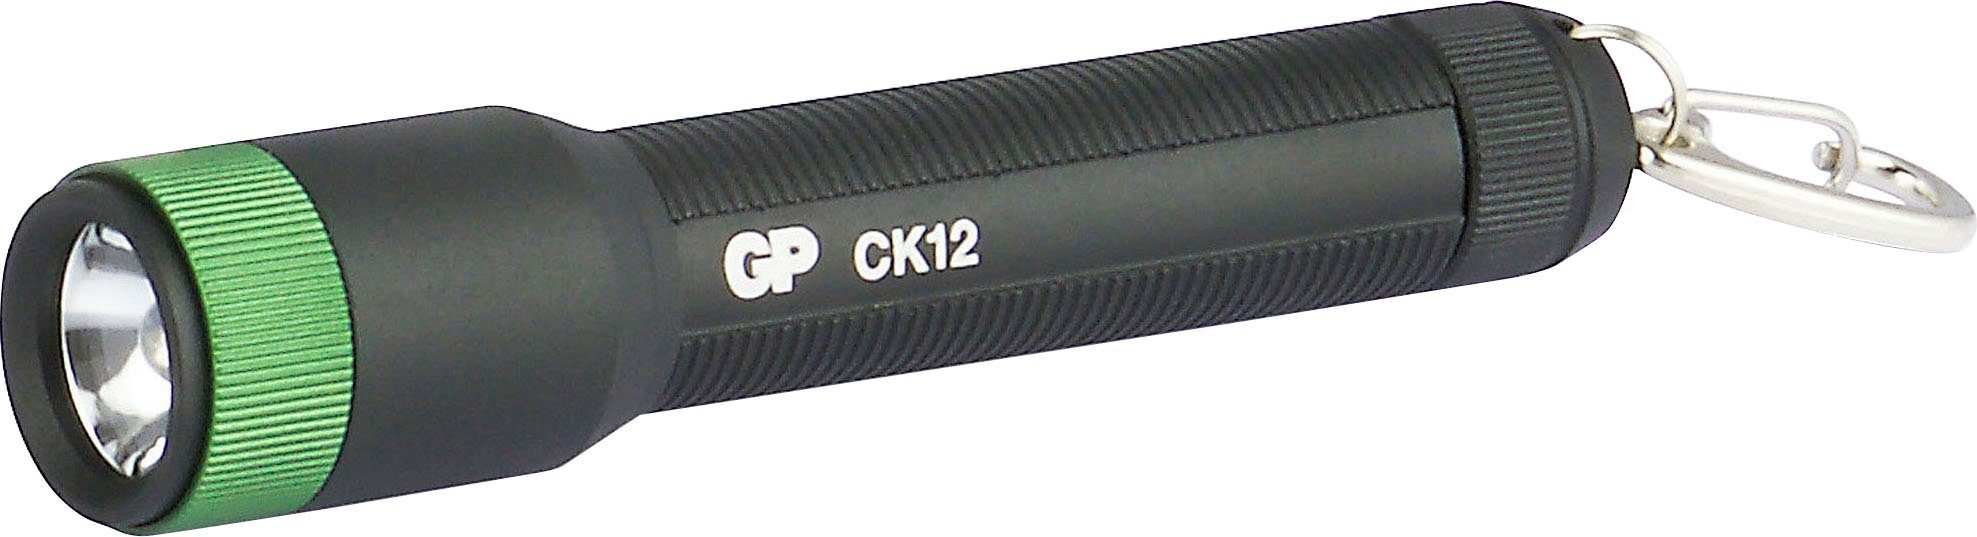 GP Batteries Taschenlampe CK12, 20 Lumen, inkl. 1x AAA Batterie,  Metallgehäuse, IPX4, Leuchtweite 25, Das stabile Aluminiumgehäuse ist  stoßfest und für zusätzlichen Halt geriffelt